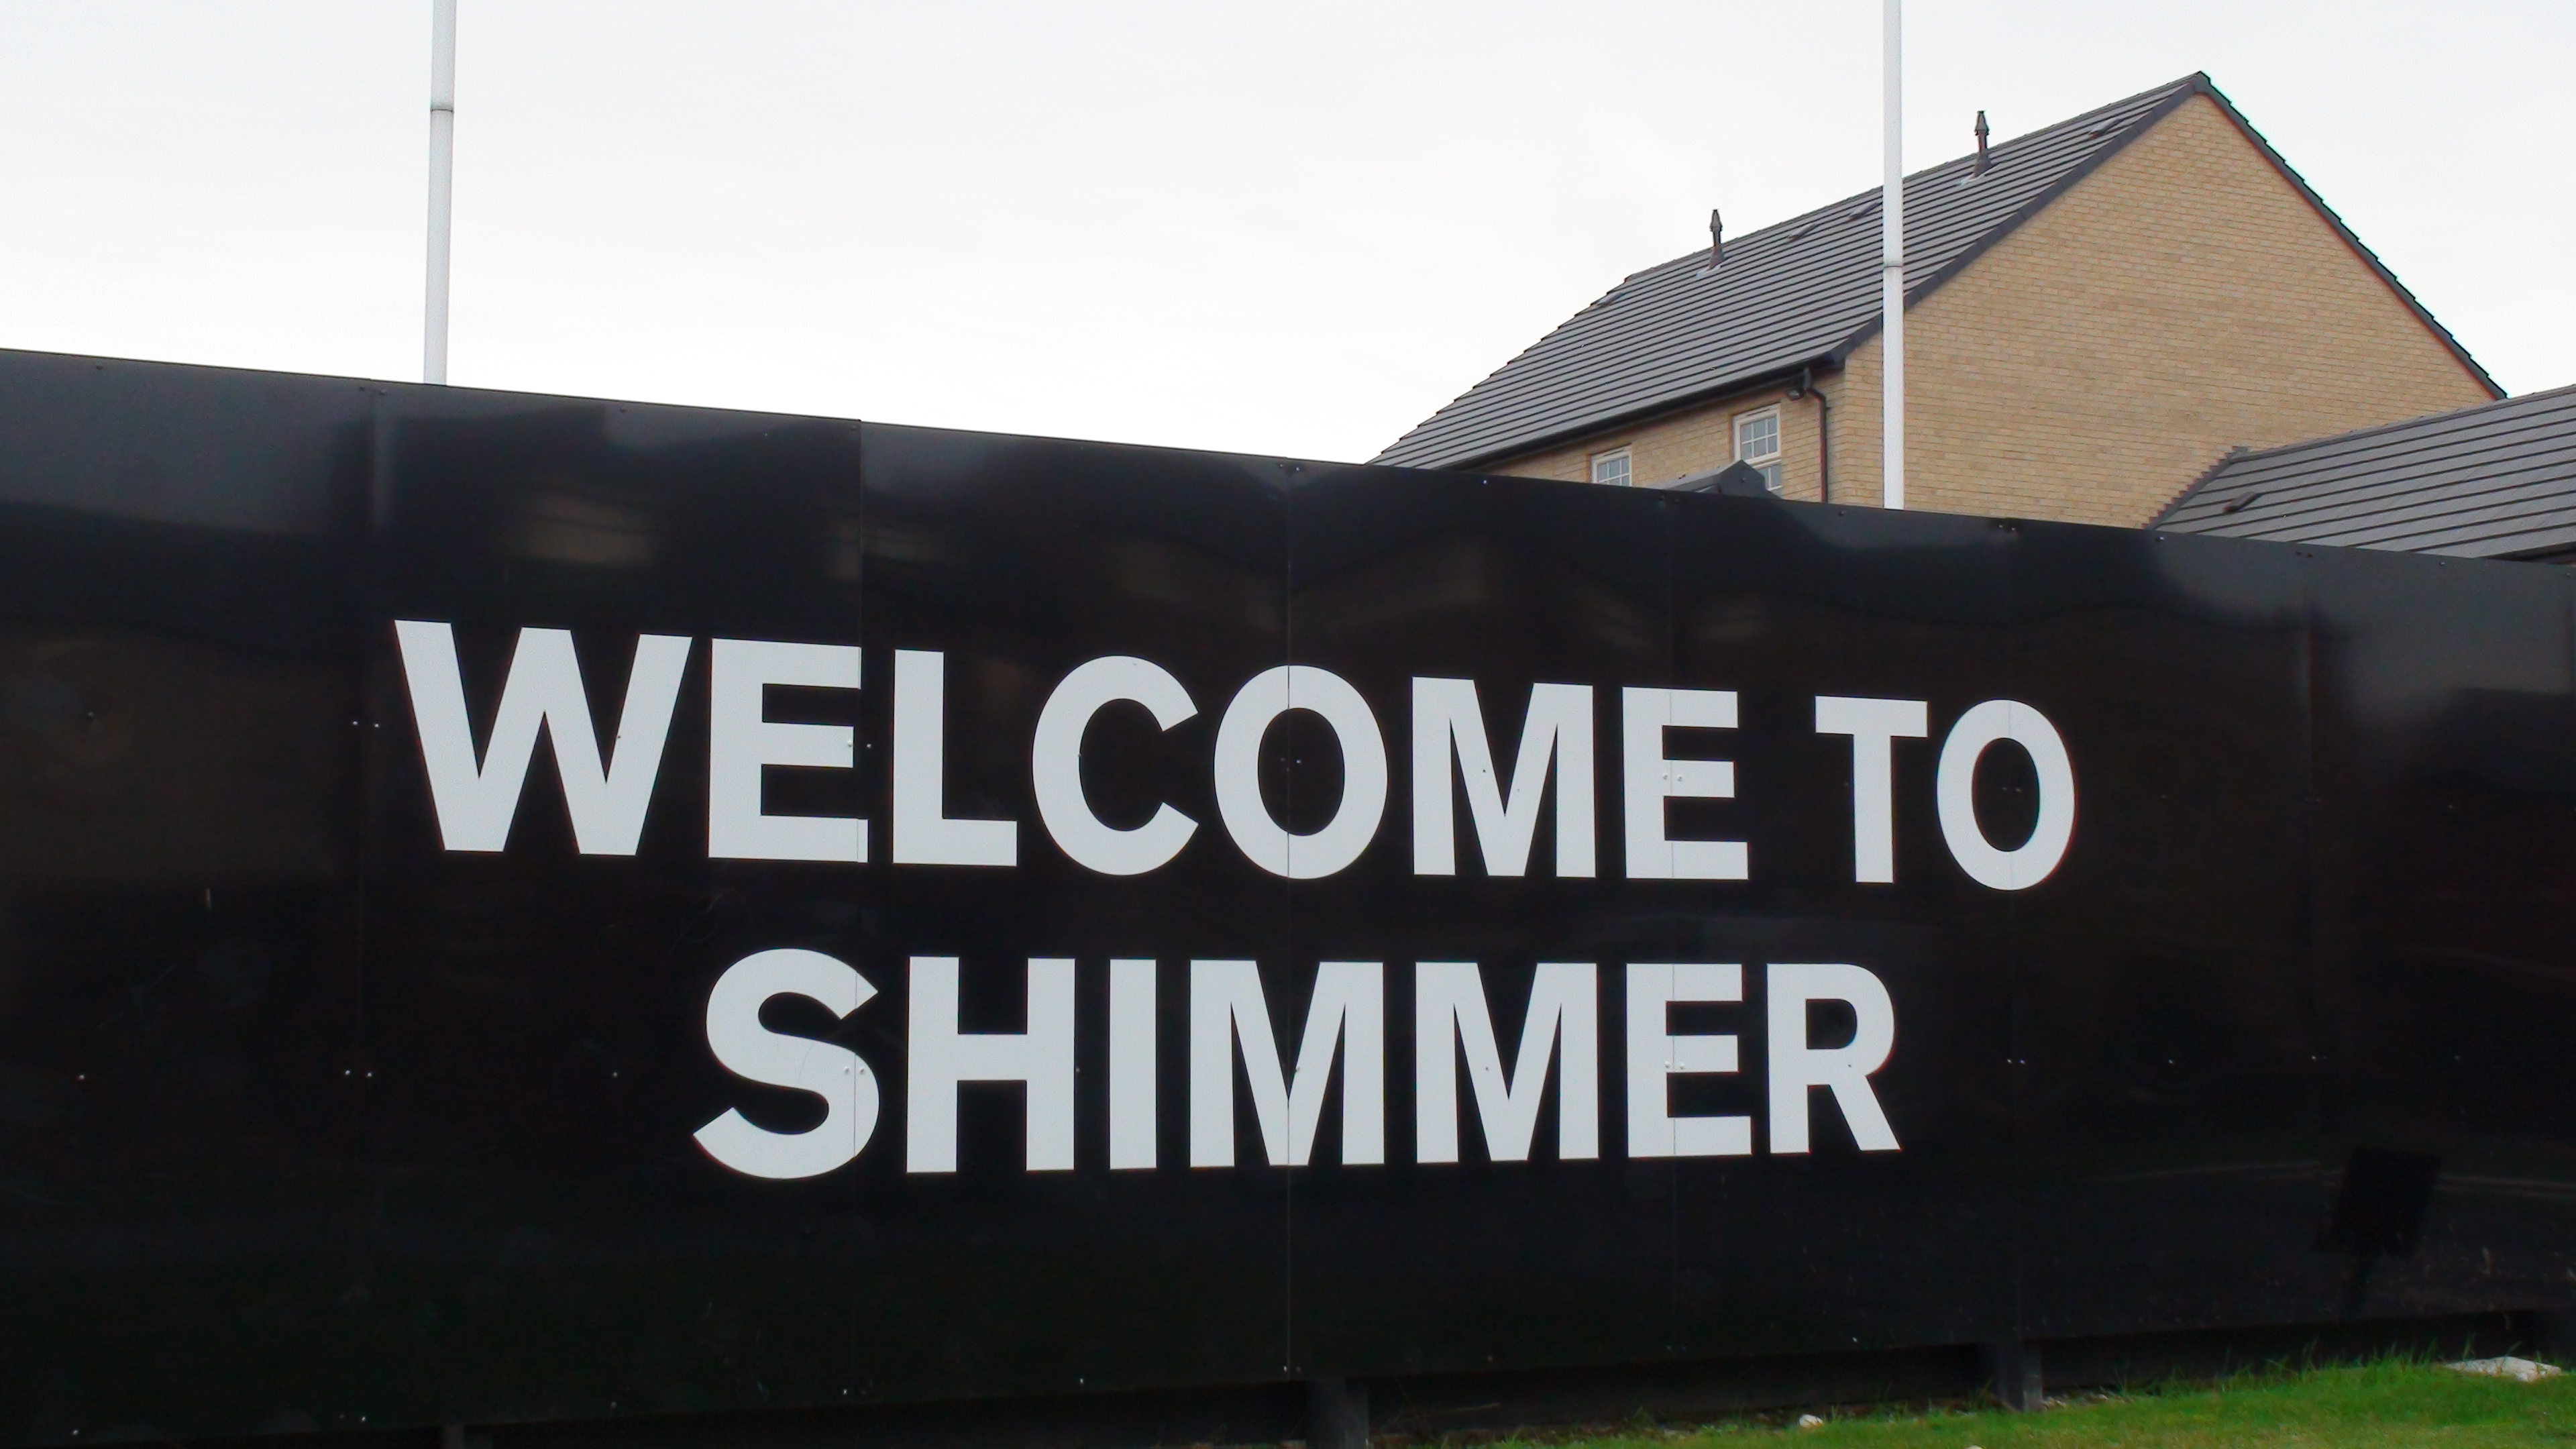 The Shimmer Estate